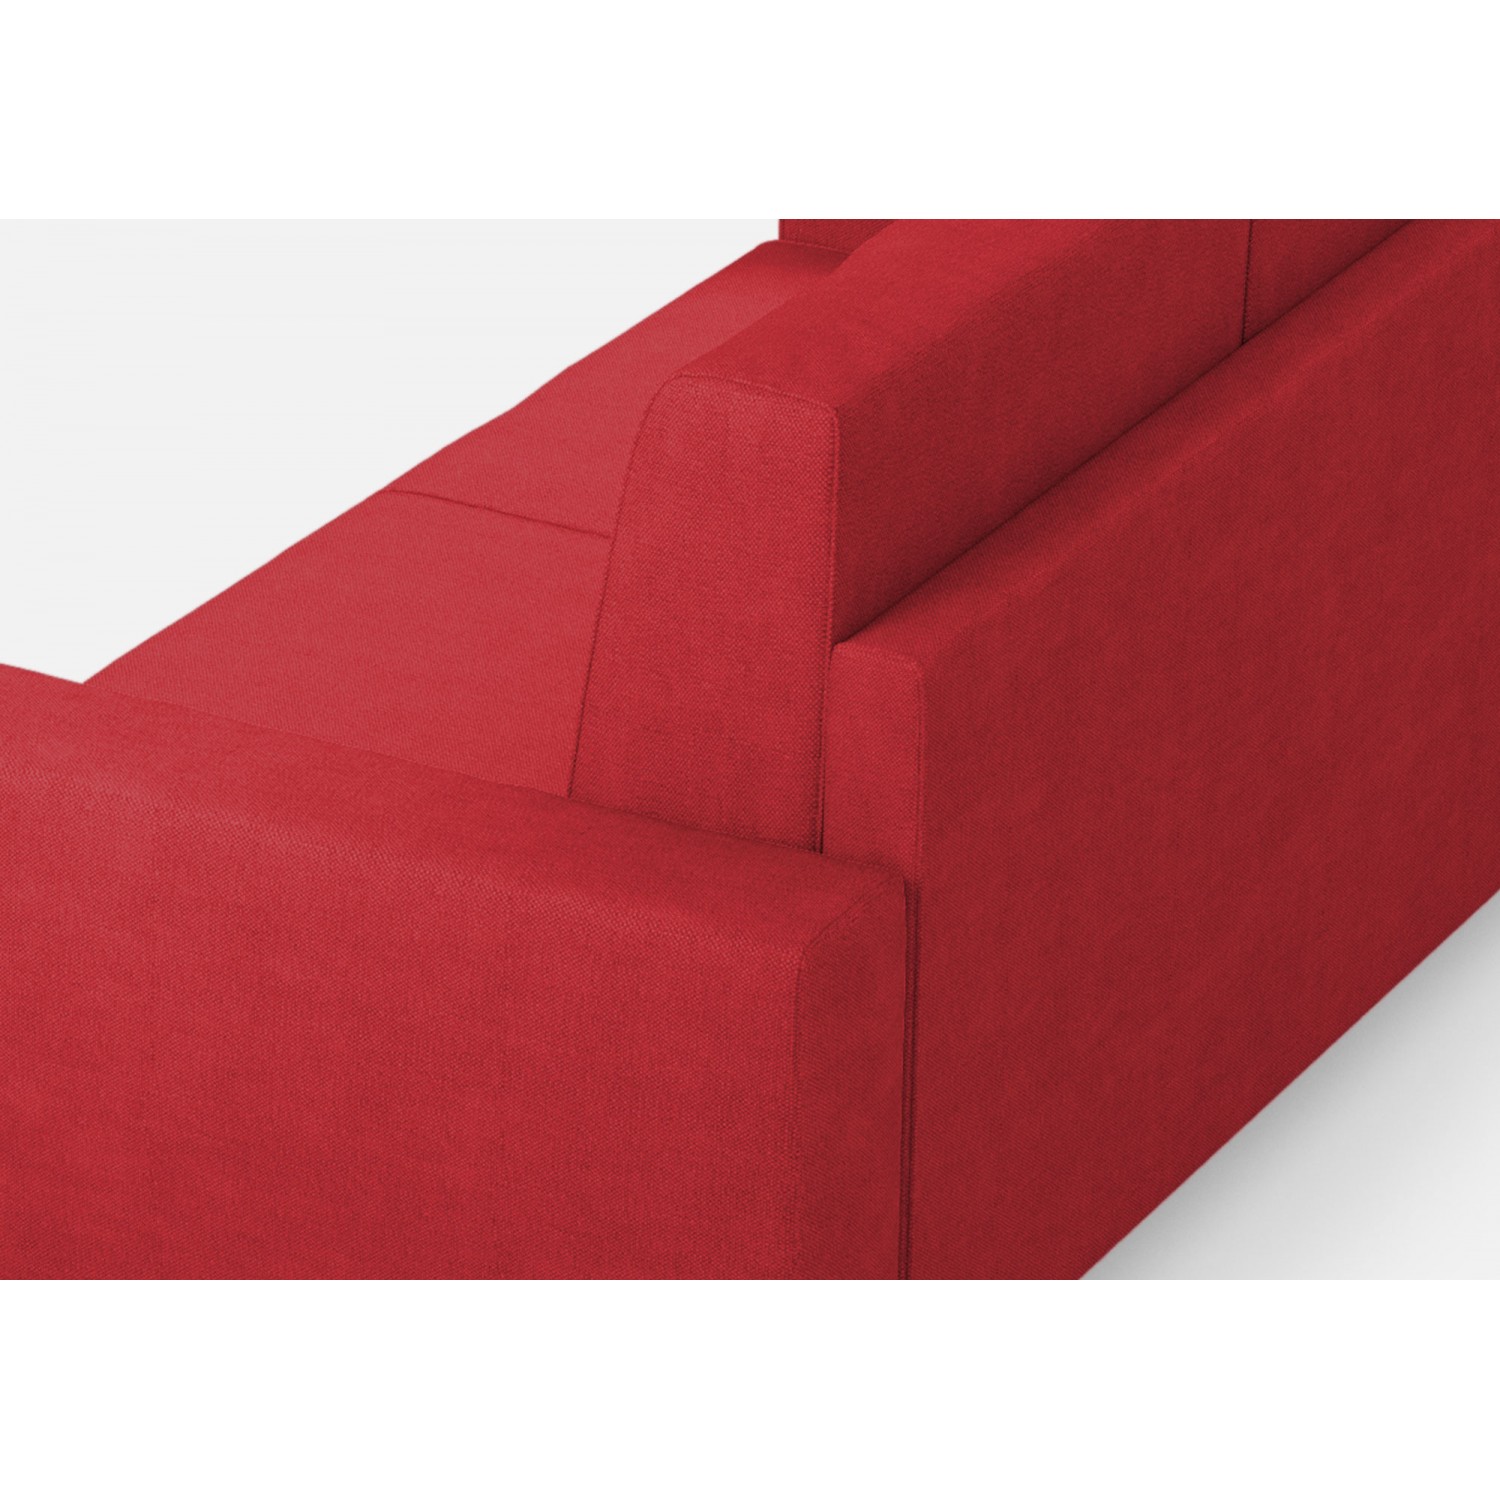 Ityhome Divano Sakar 3 posti (tre sedute da 60cm)+ angolo + divano 2 posti medio (due sedute da 70cm) misure esterne L.286x246 colore rosso